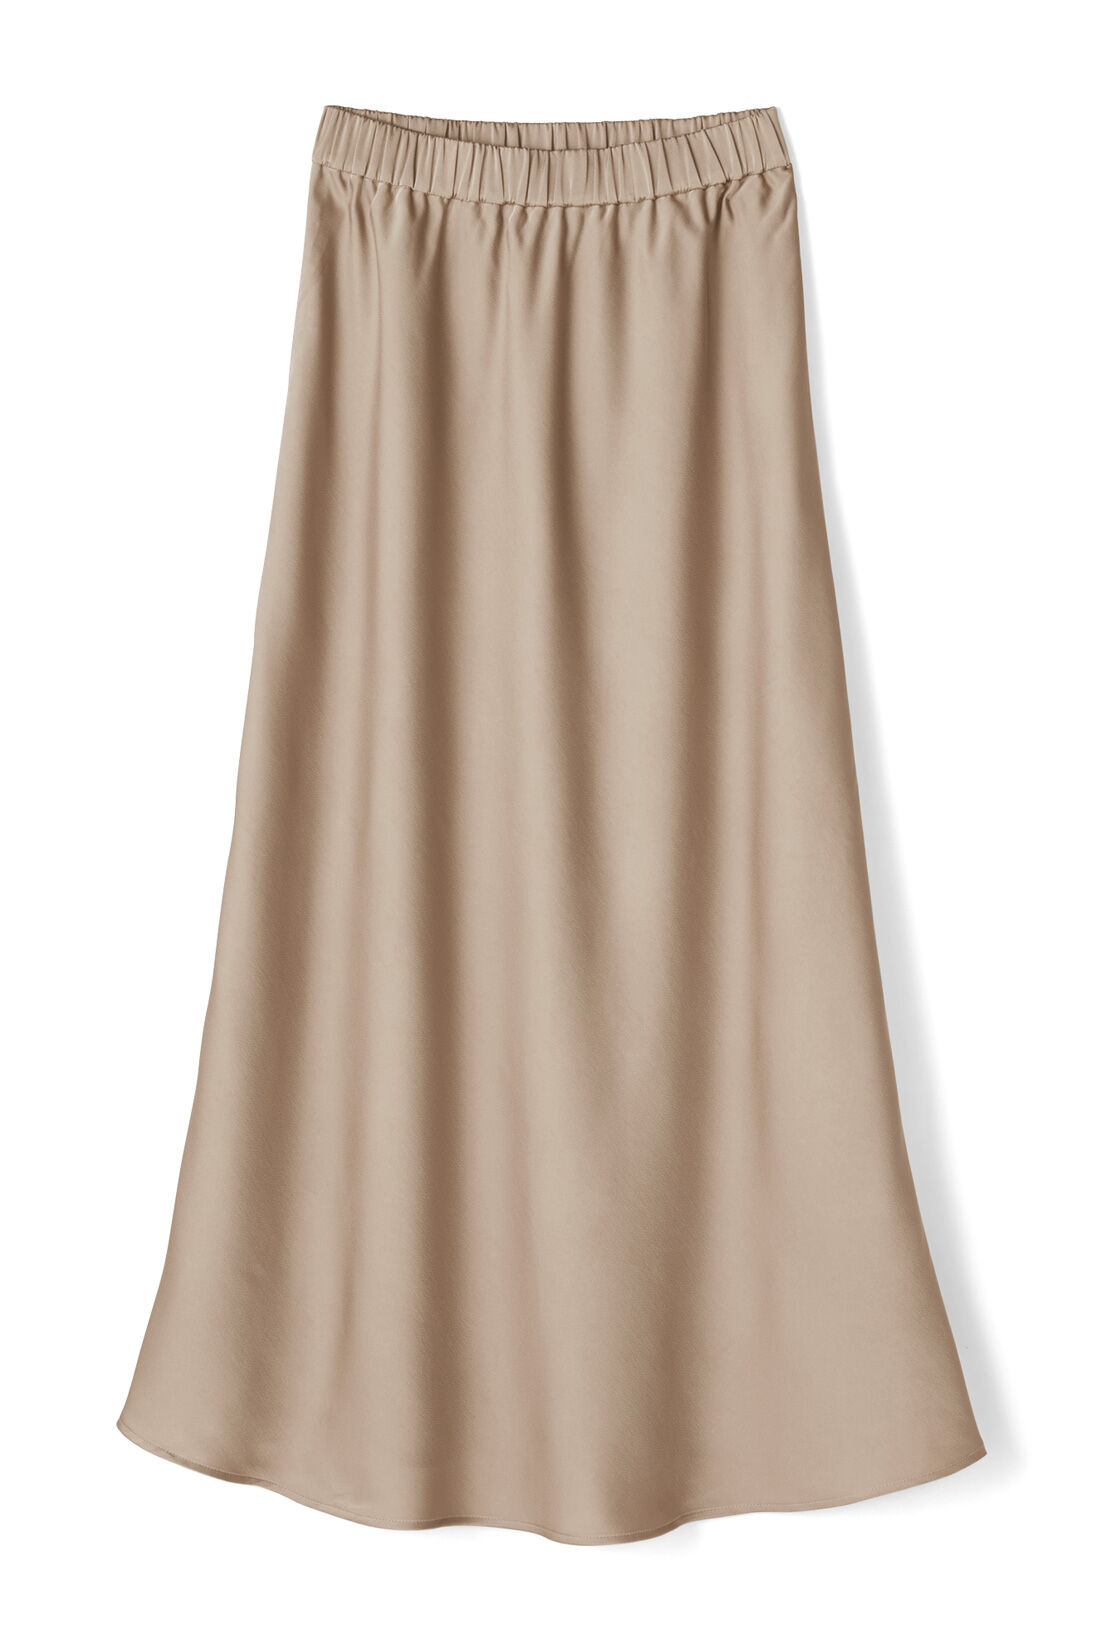 IEDIT|IEDIT[イディット]　サテンの光沢が美しいセミサーキュラースカート〈ディープブルー〉|〈ベージュ〉